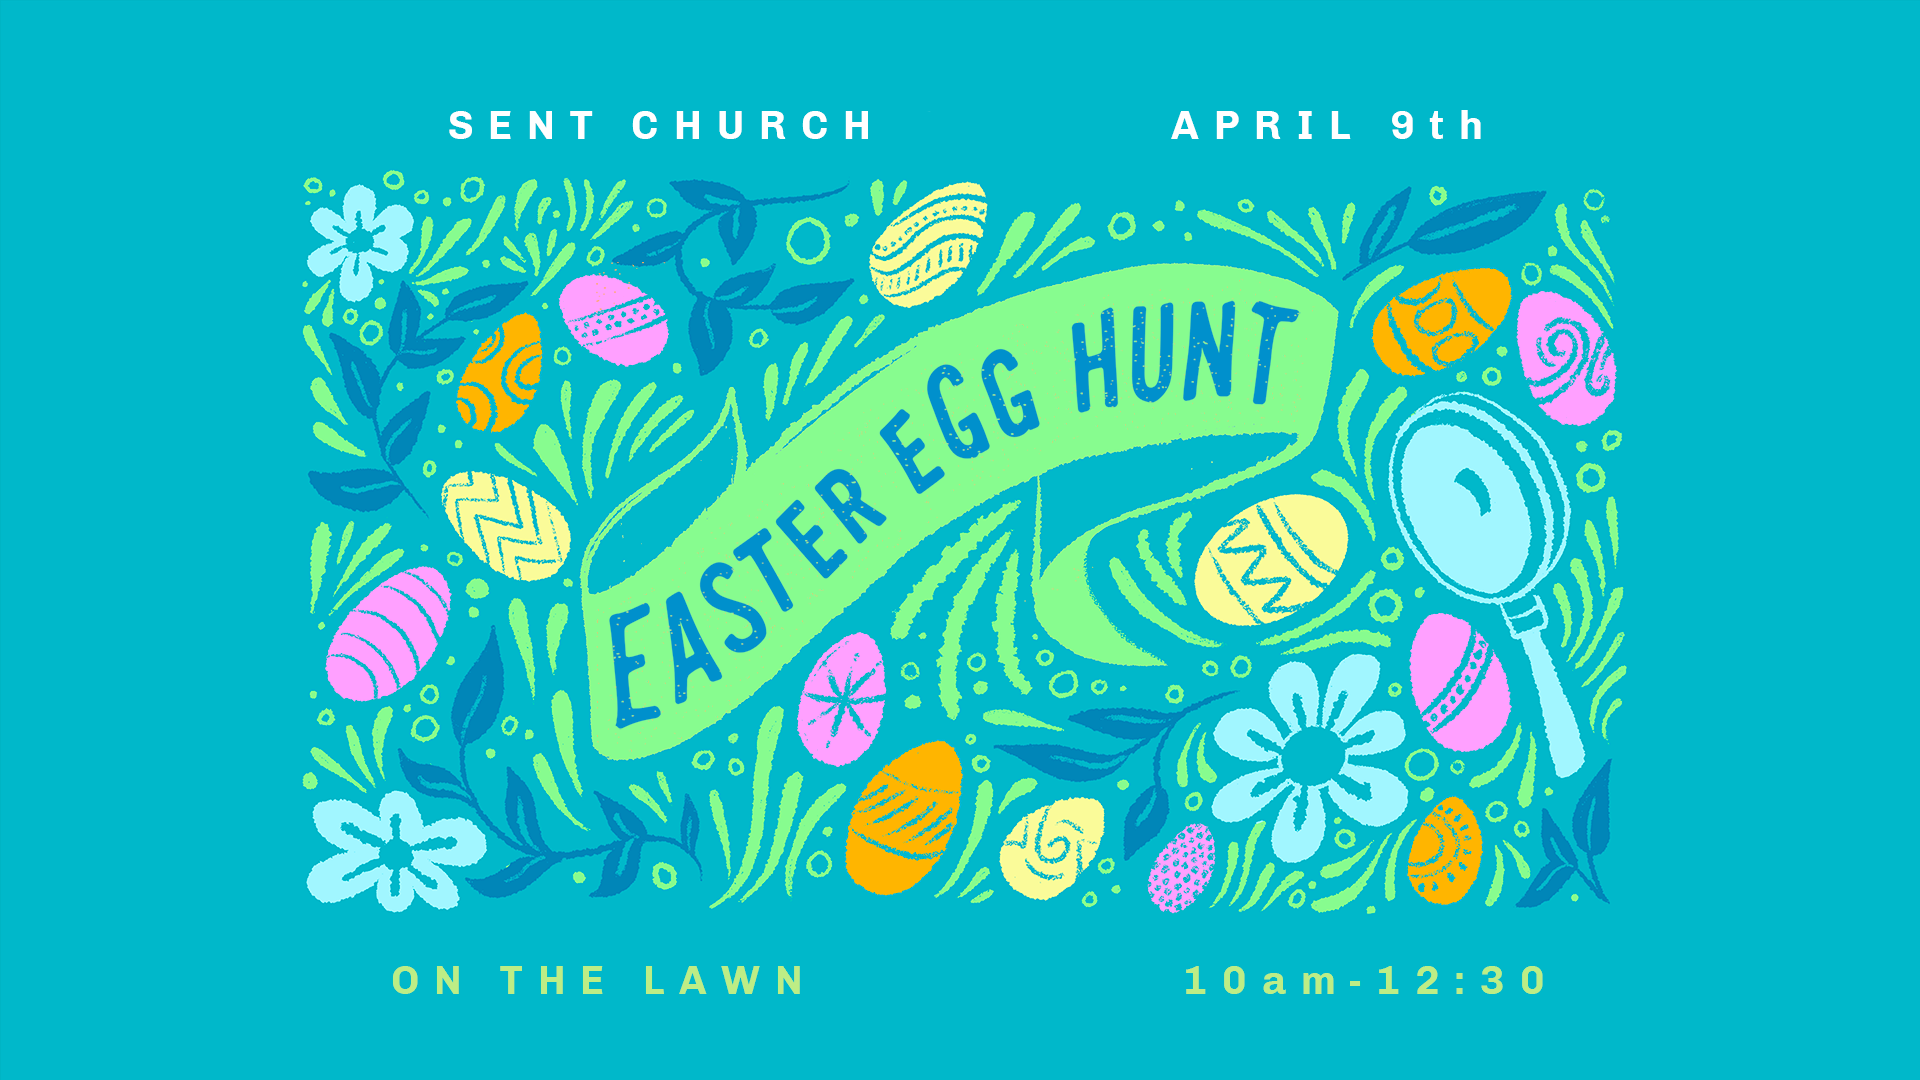 Easter Egg Hunt Sent Church